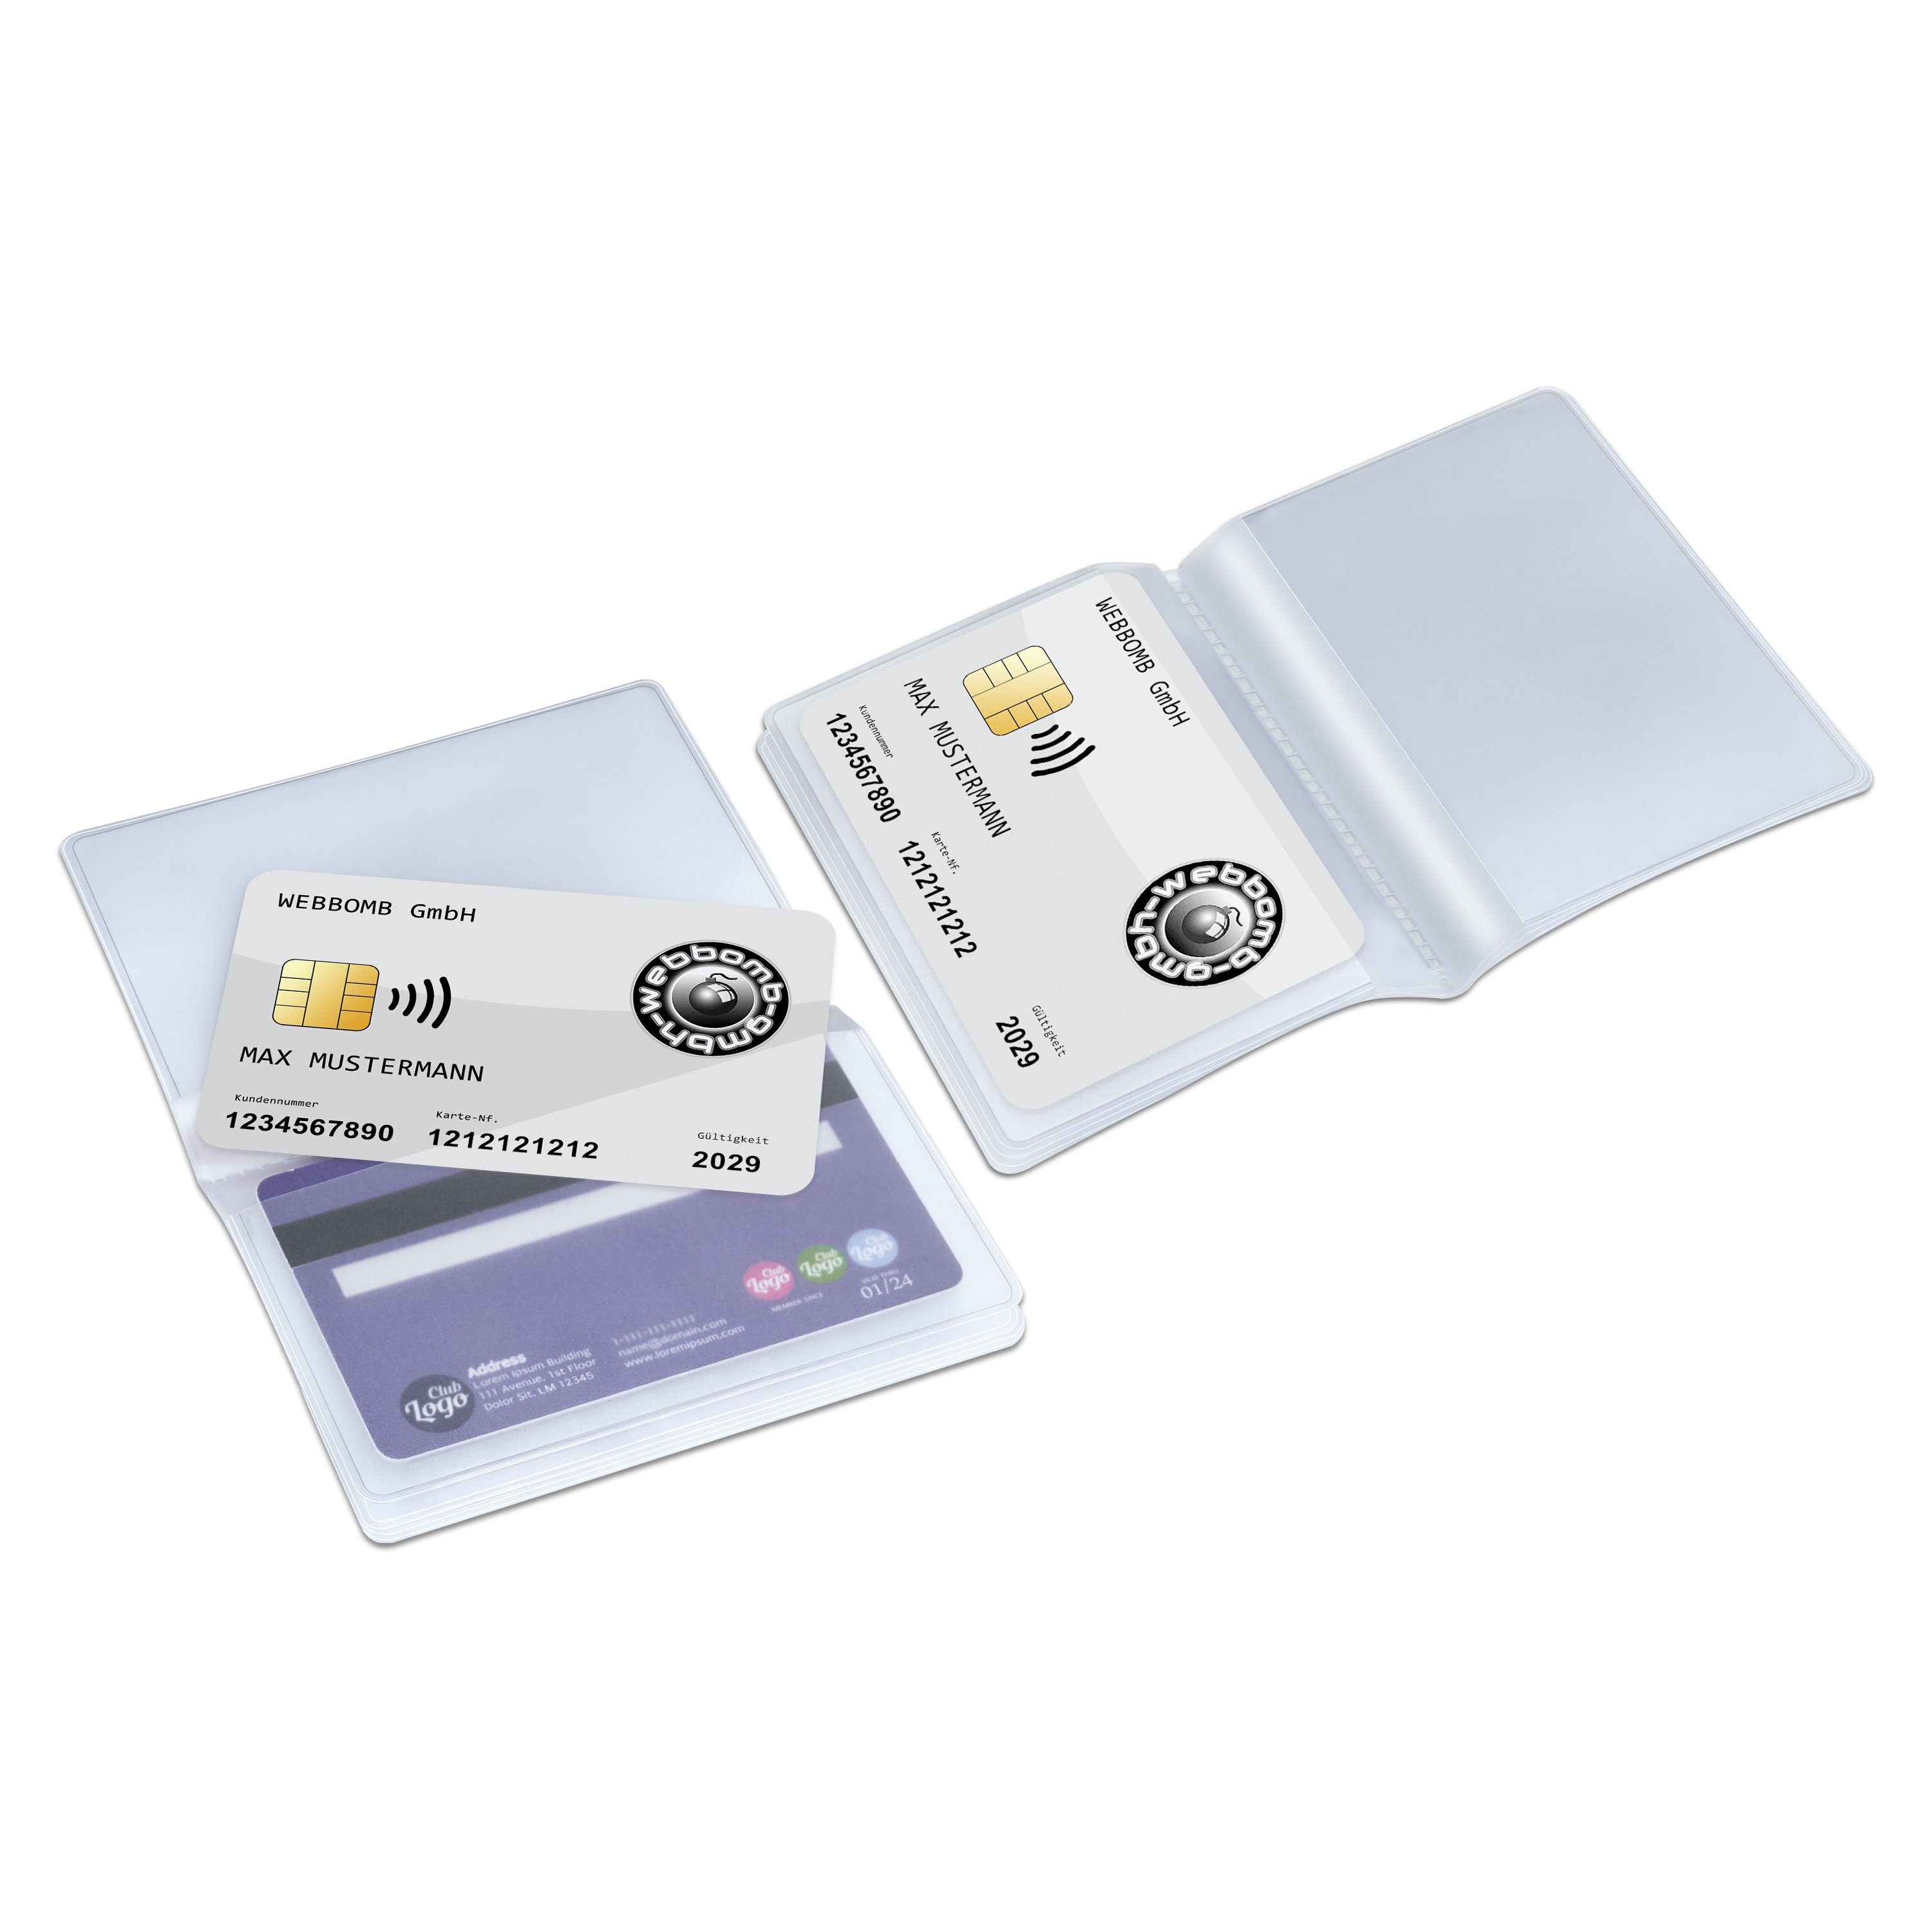 Kartenhalter 10fach transparent WEBBOMB Einsatz Etui 2x10fach Wallet Brieftaschen Kartenetui